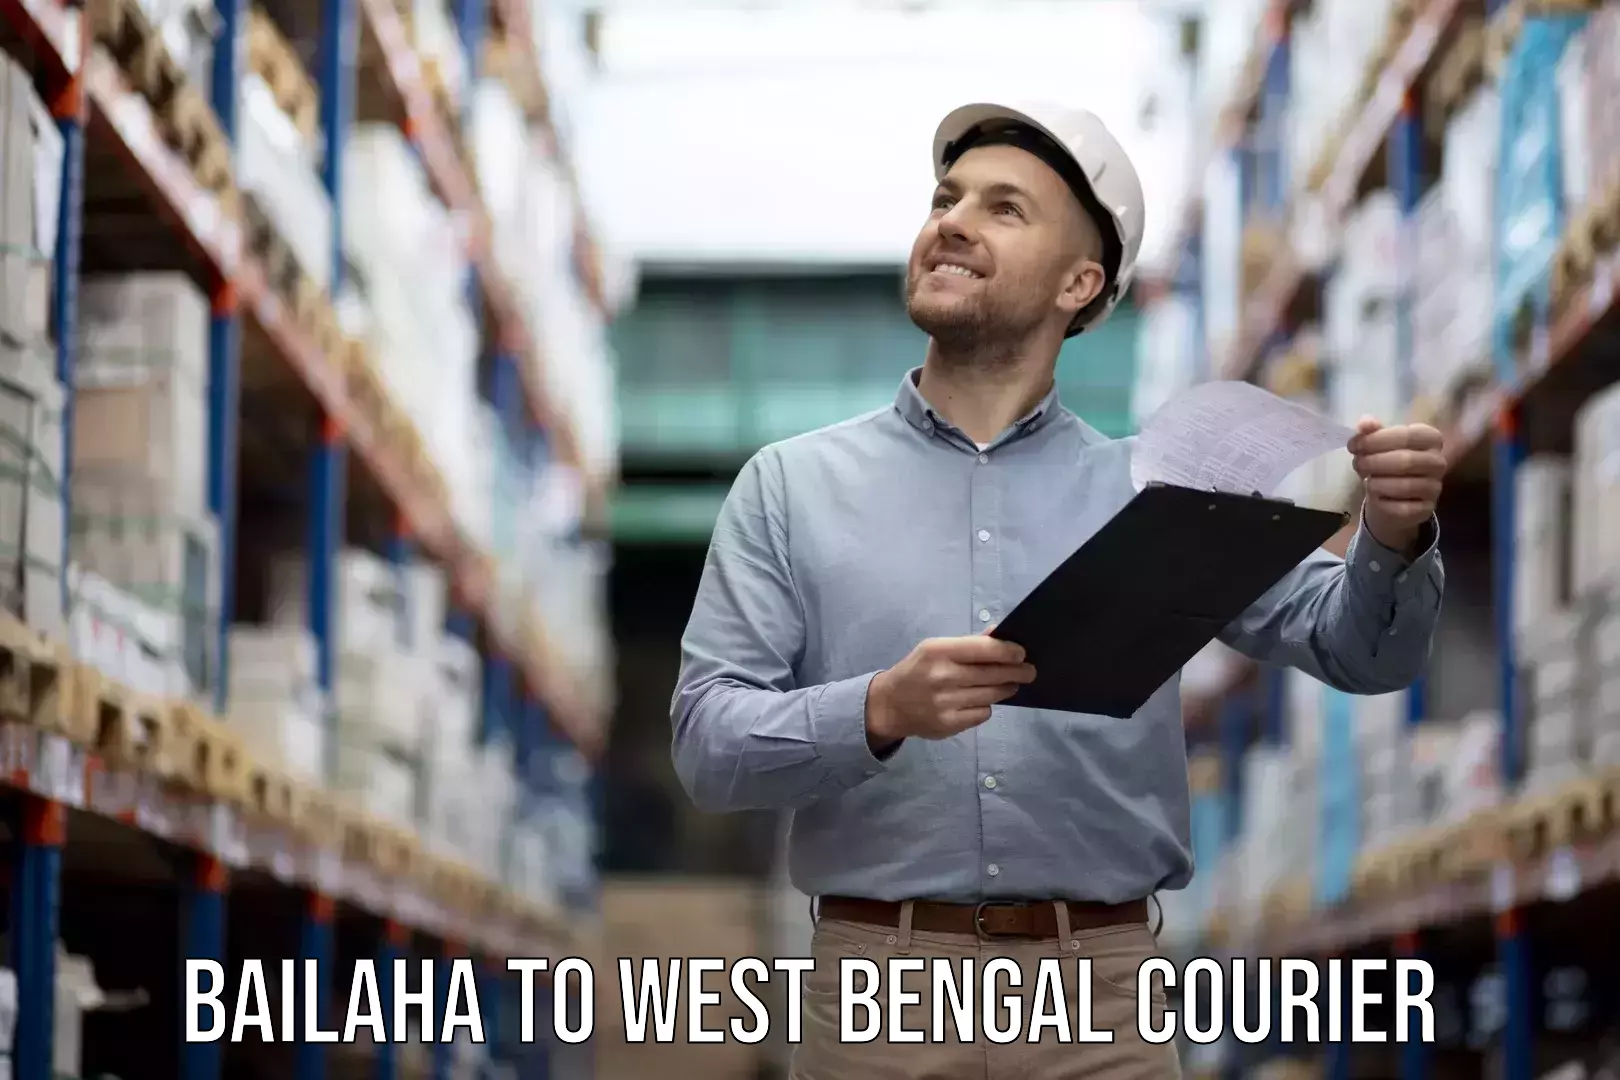 Expert packing and moving Bailaha to Kolkata Port